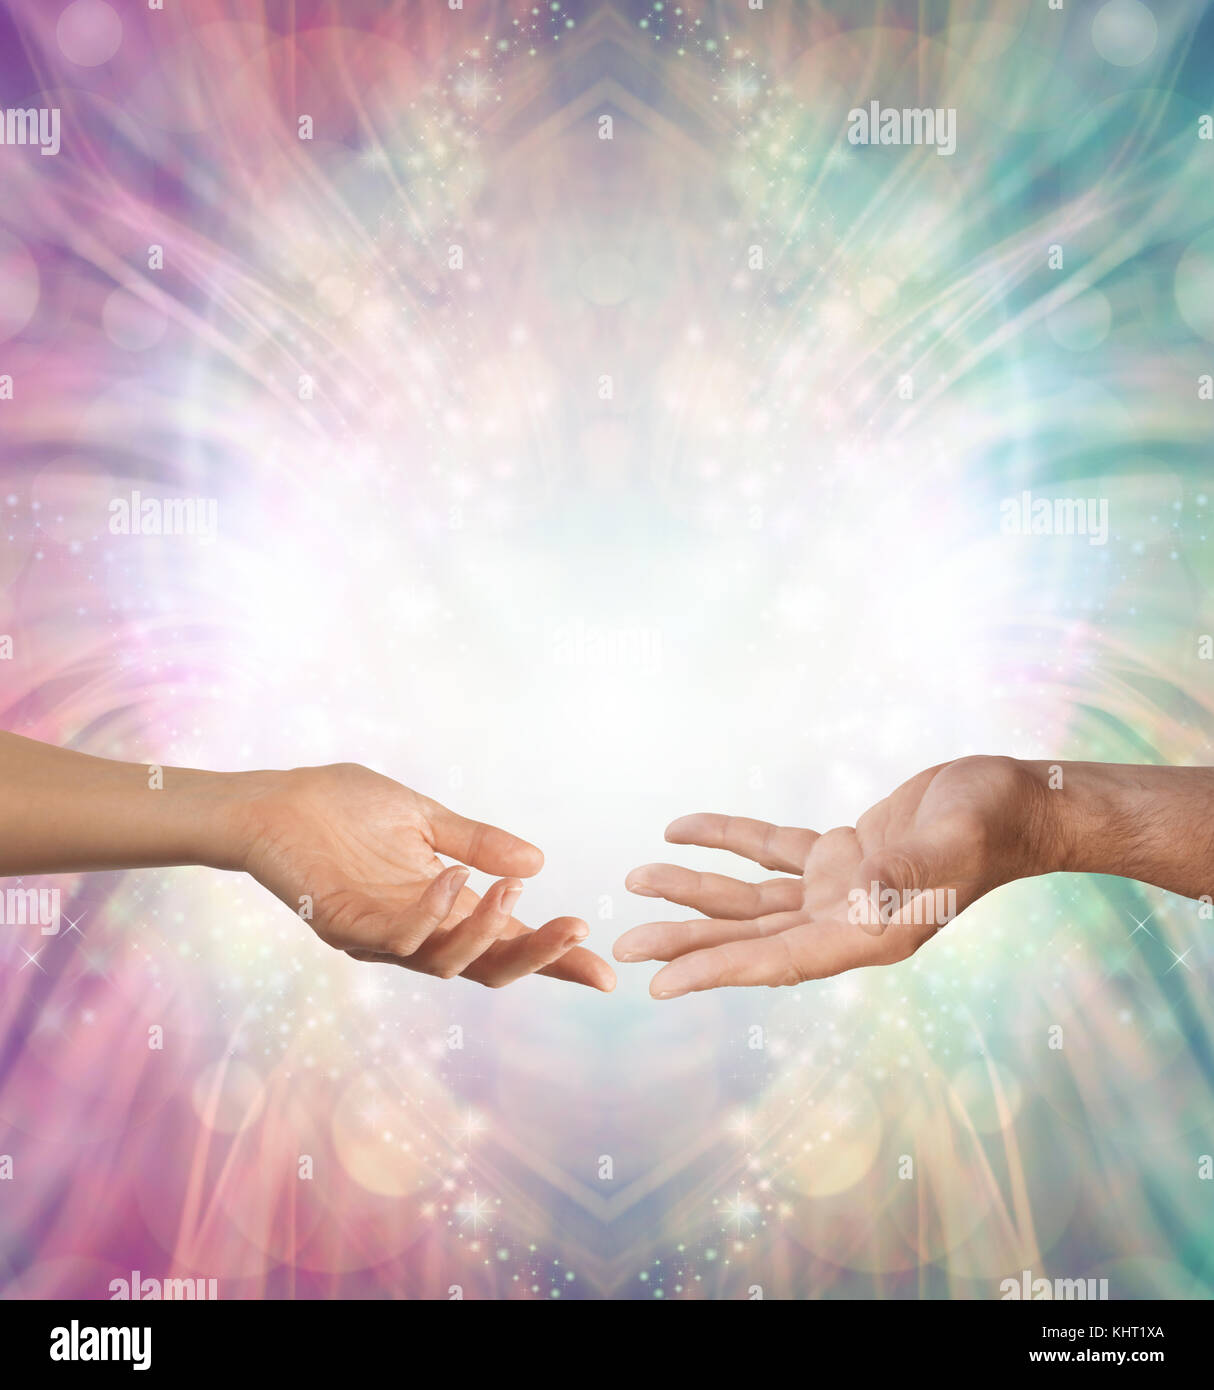 Mano mano femenina y masculina con las palmas abiertas enfrentadas contra un hermoso intrincado de masculino y femenino de color de fondo de energía Foto de stock